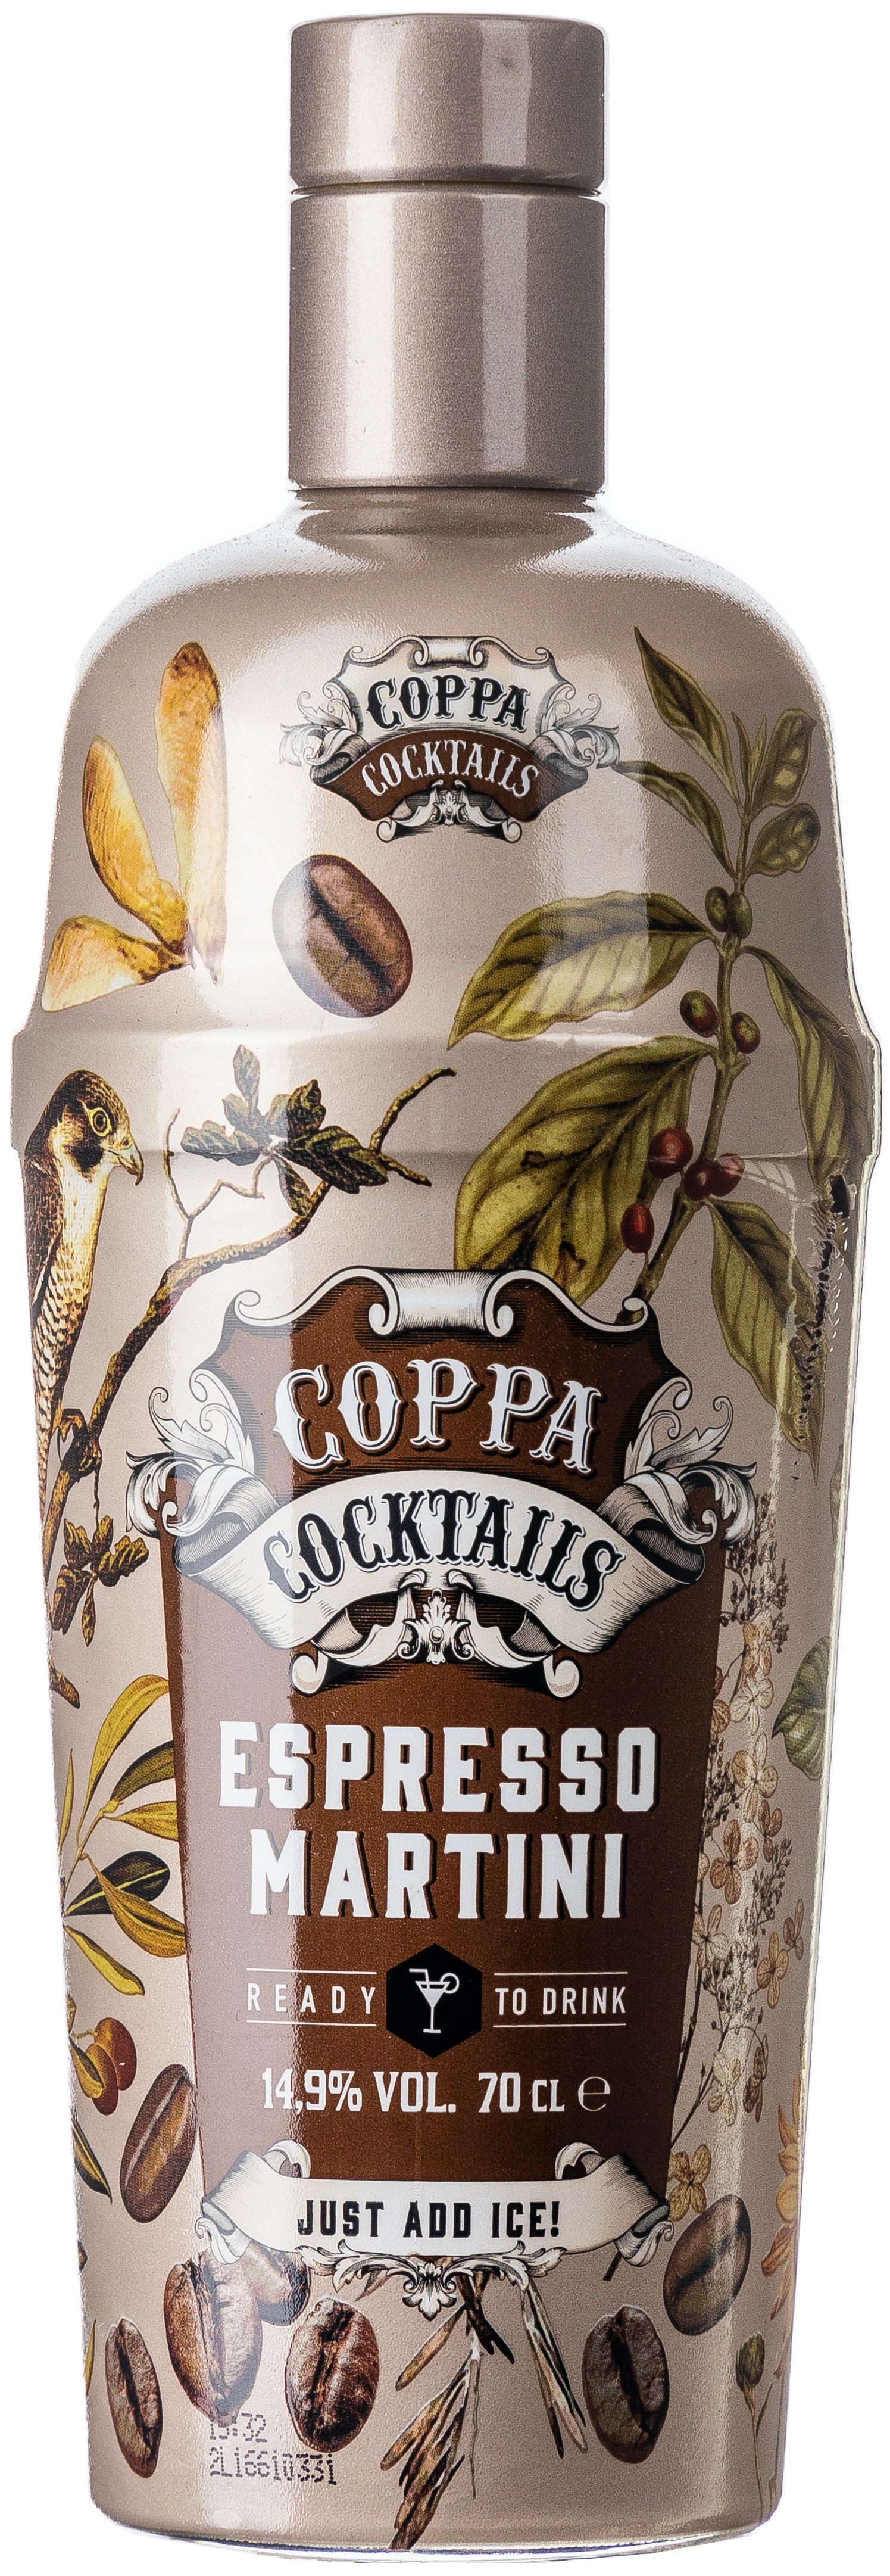 Coppa Cocktails Espresso Martini 14,9% vol. 0,7 L 